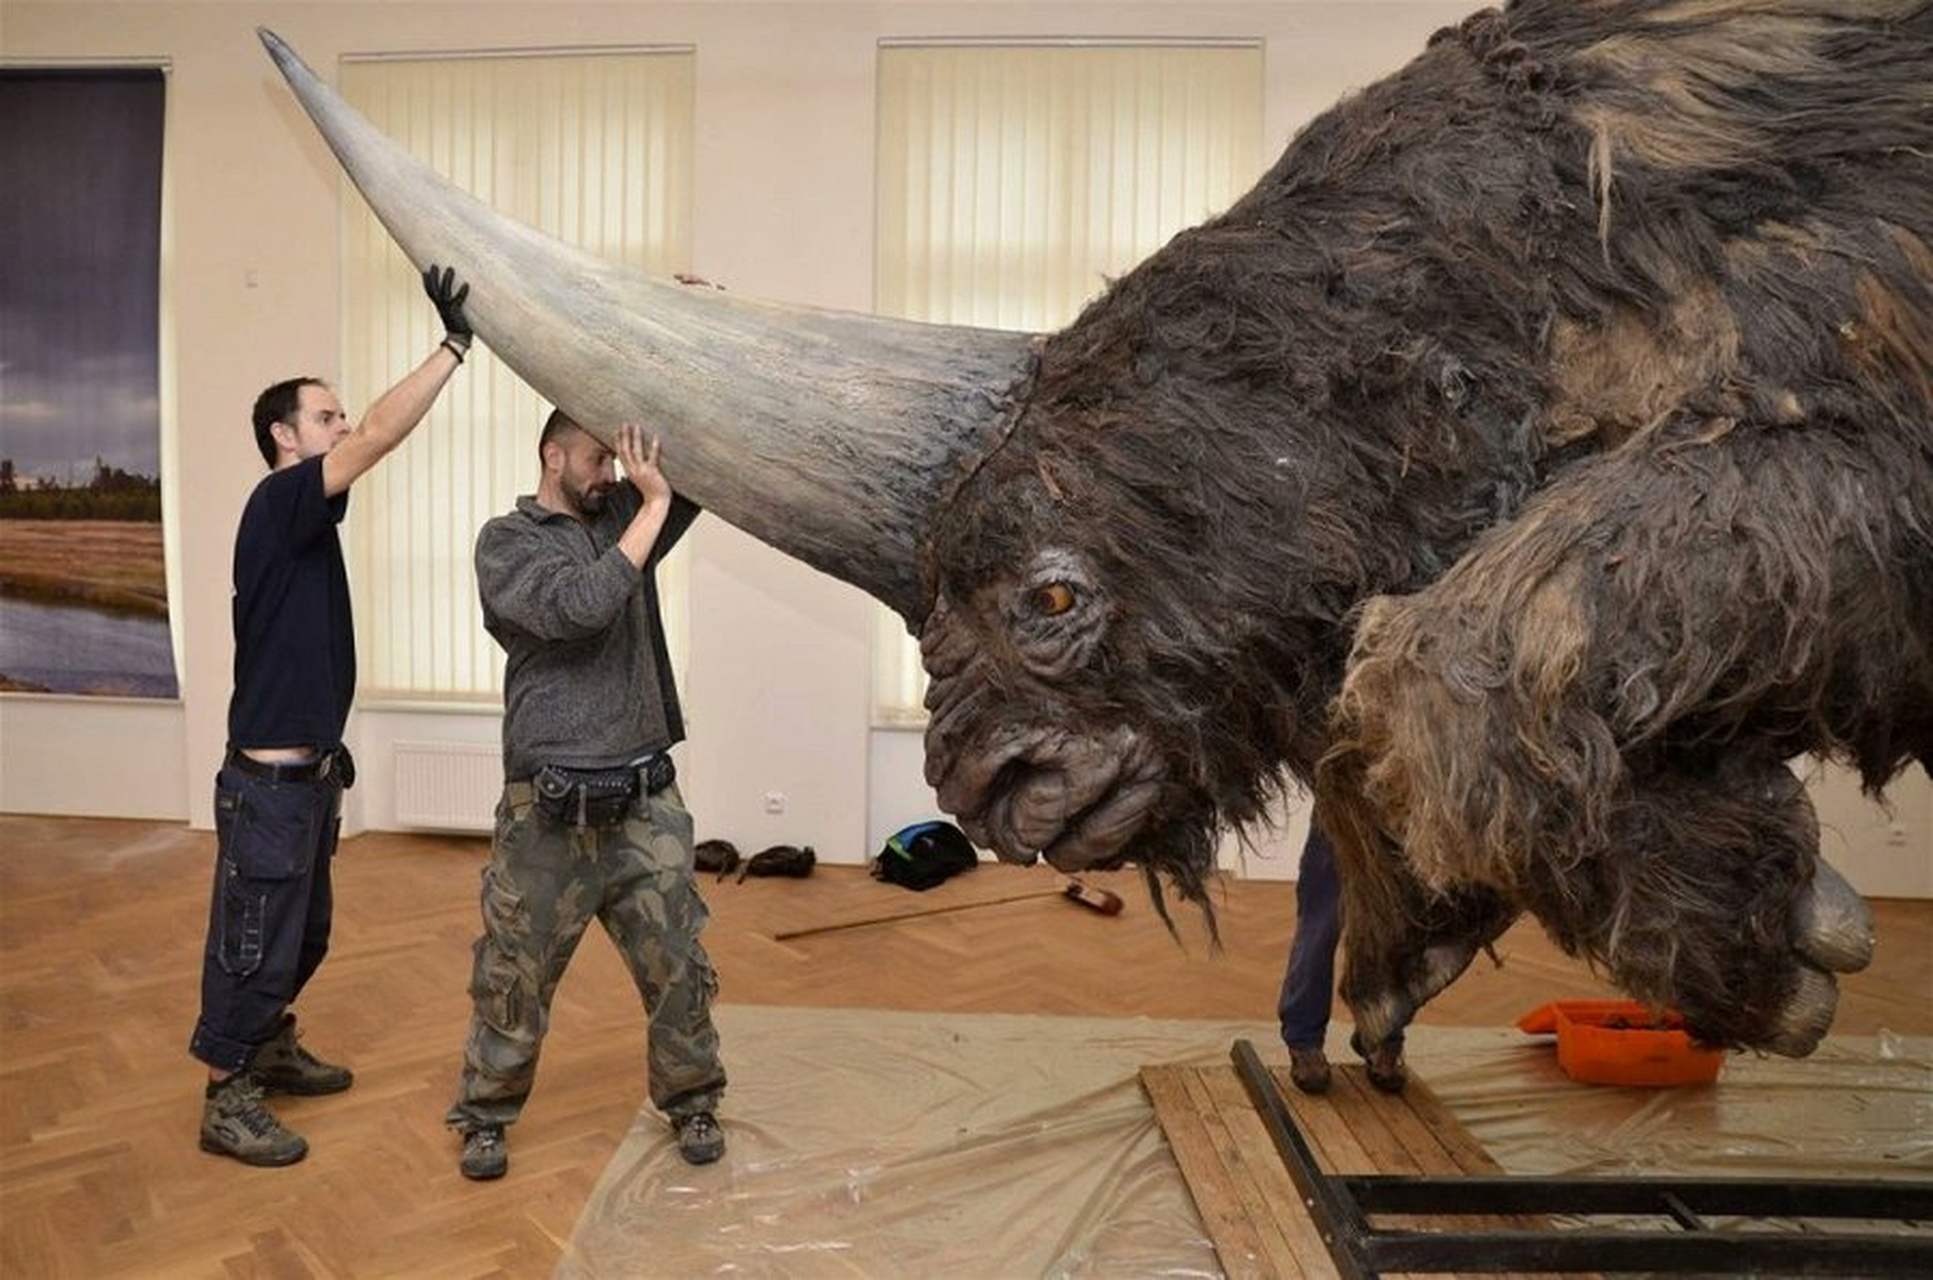 西伯利亚独角兽化石图片